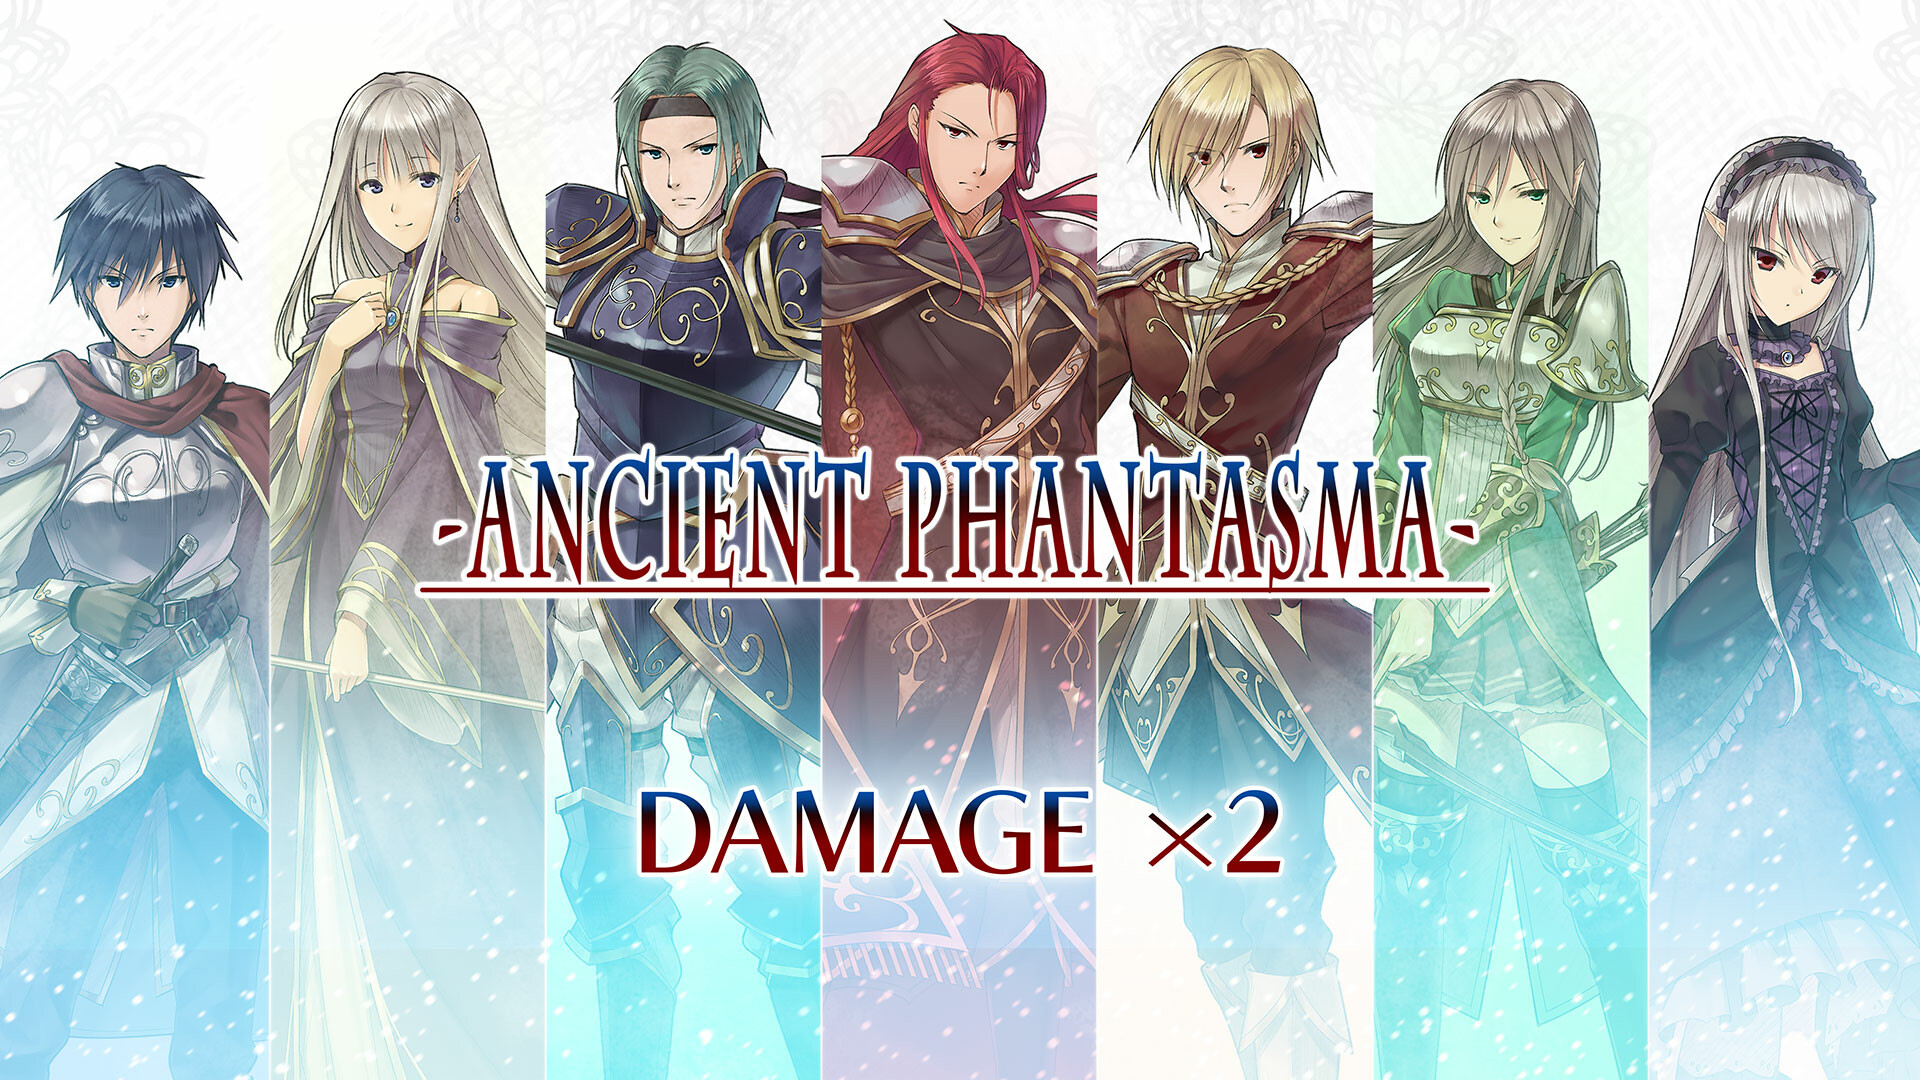 Damage x2 - Ancient Phantasma Featured Screenshot #1